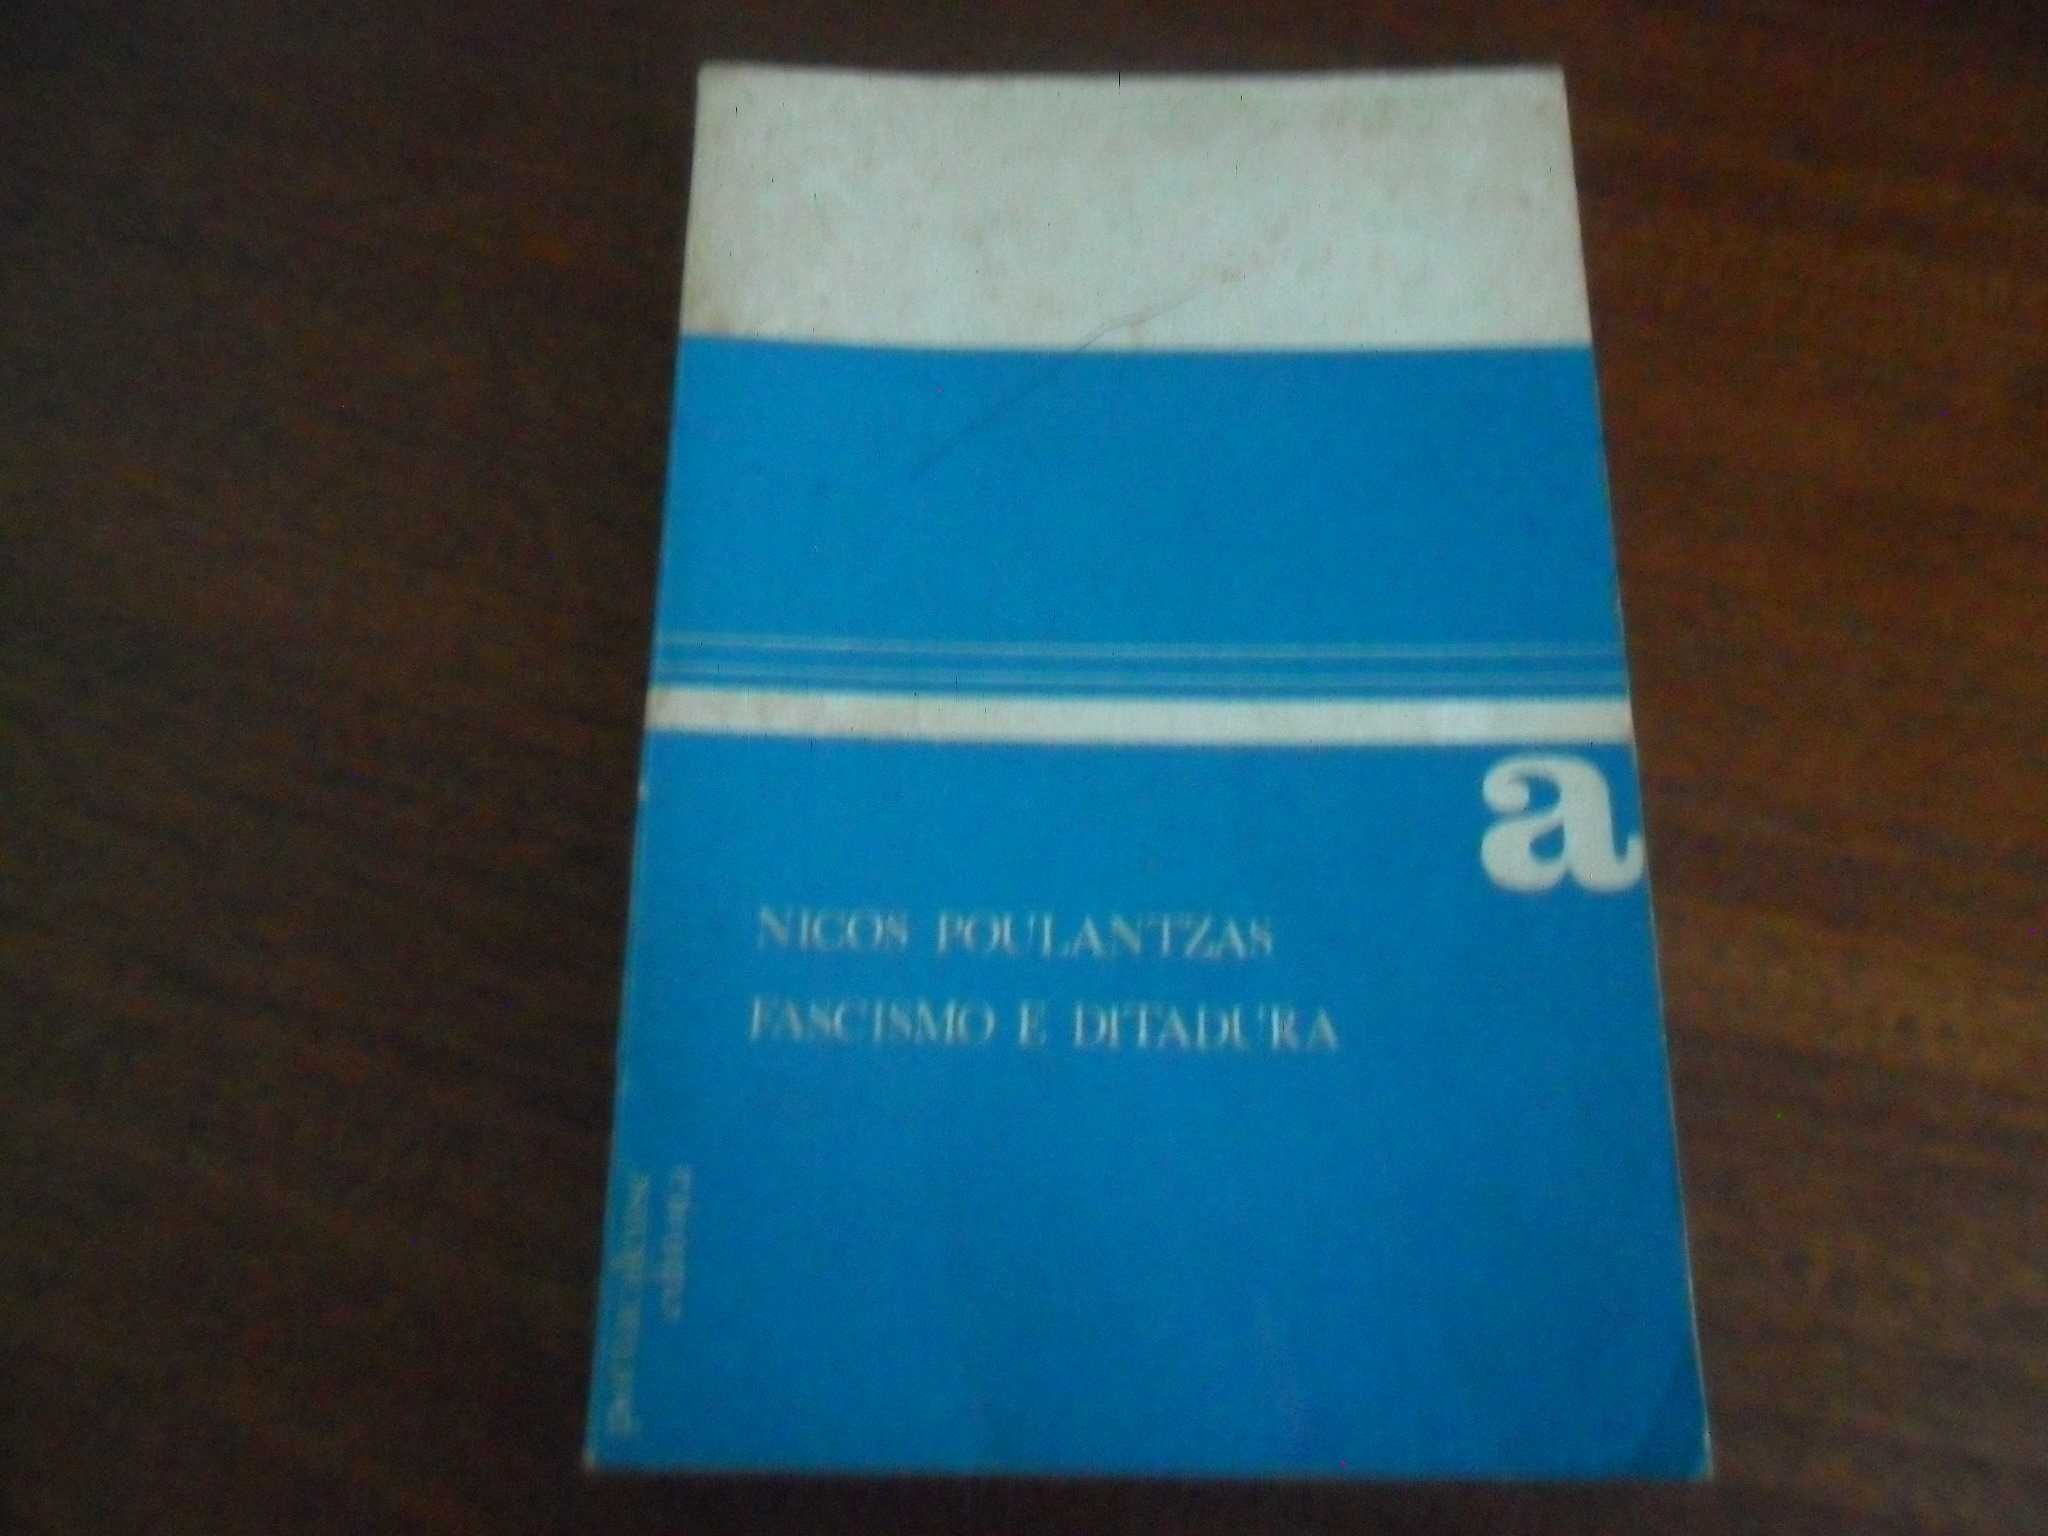 "Fascismo e Ditadura" - 2 Volumes de Nicos Poulantzas - 1ª Edição 1972